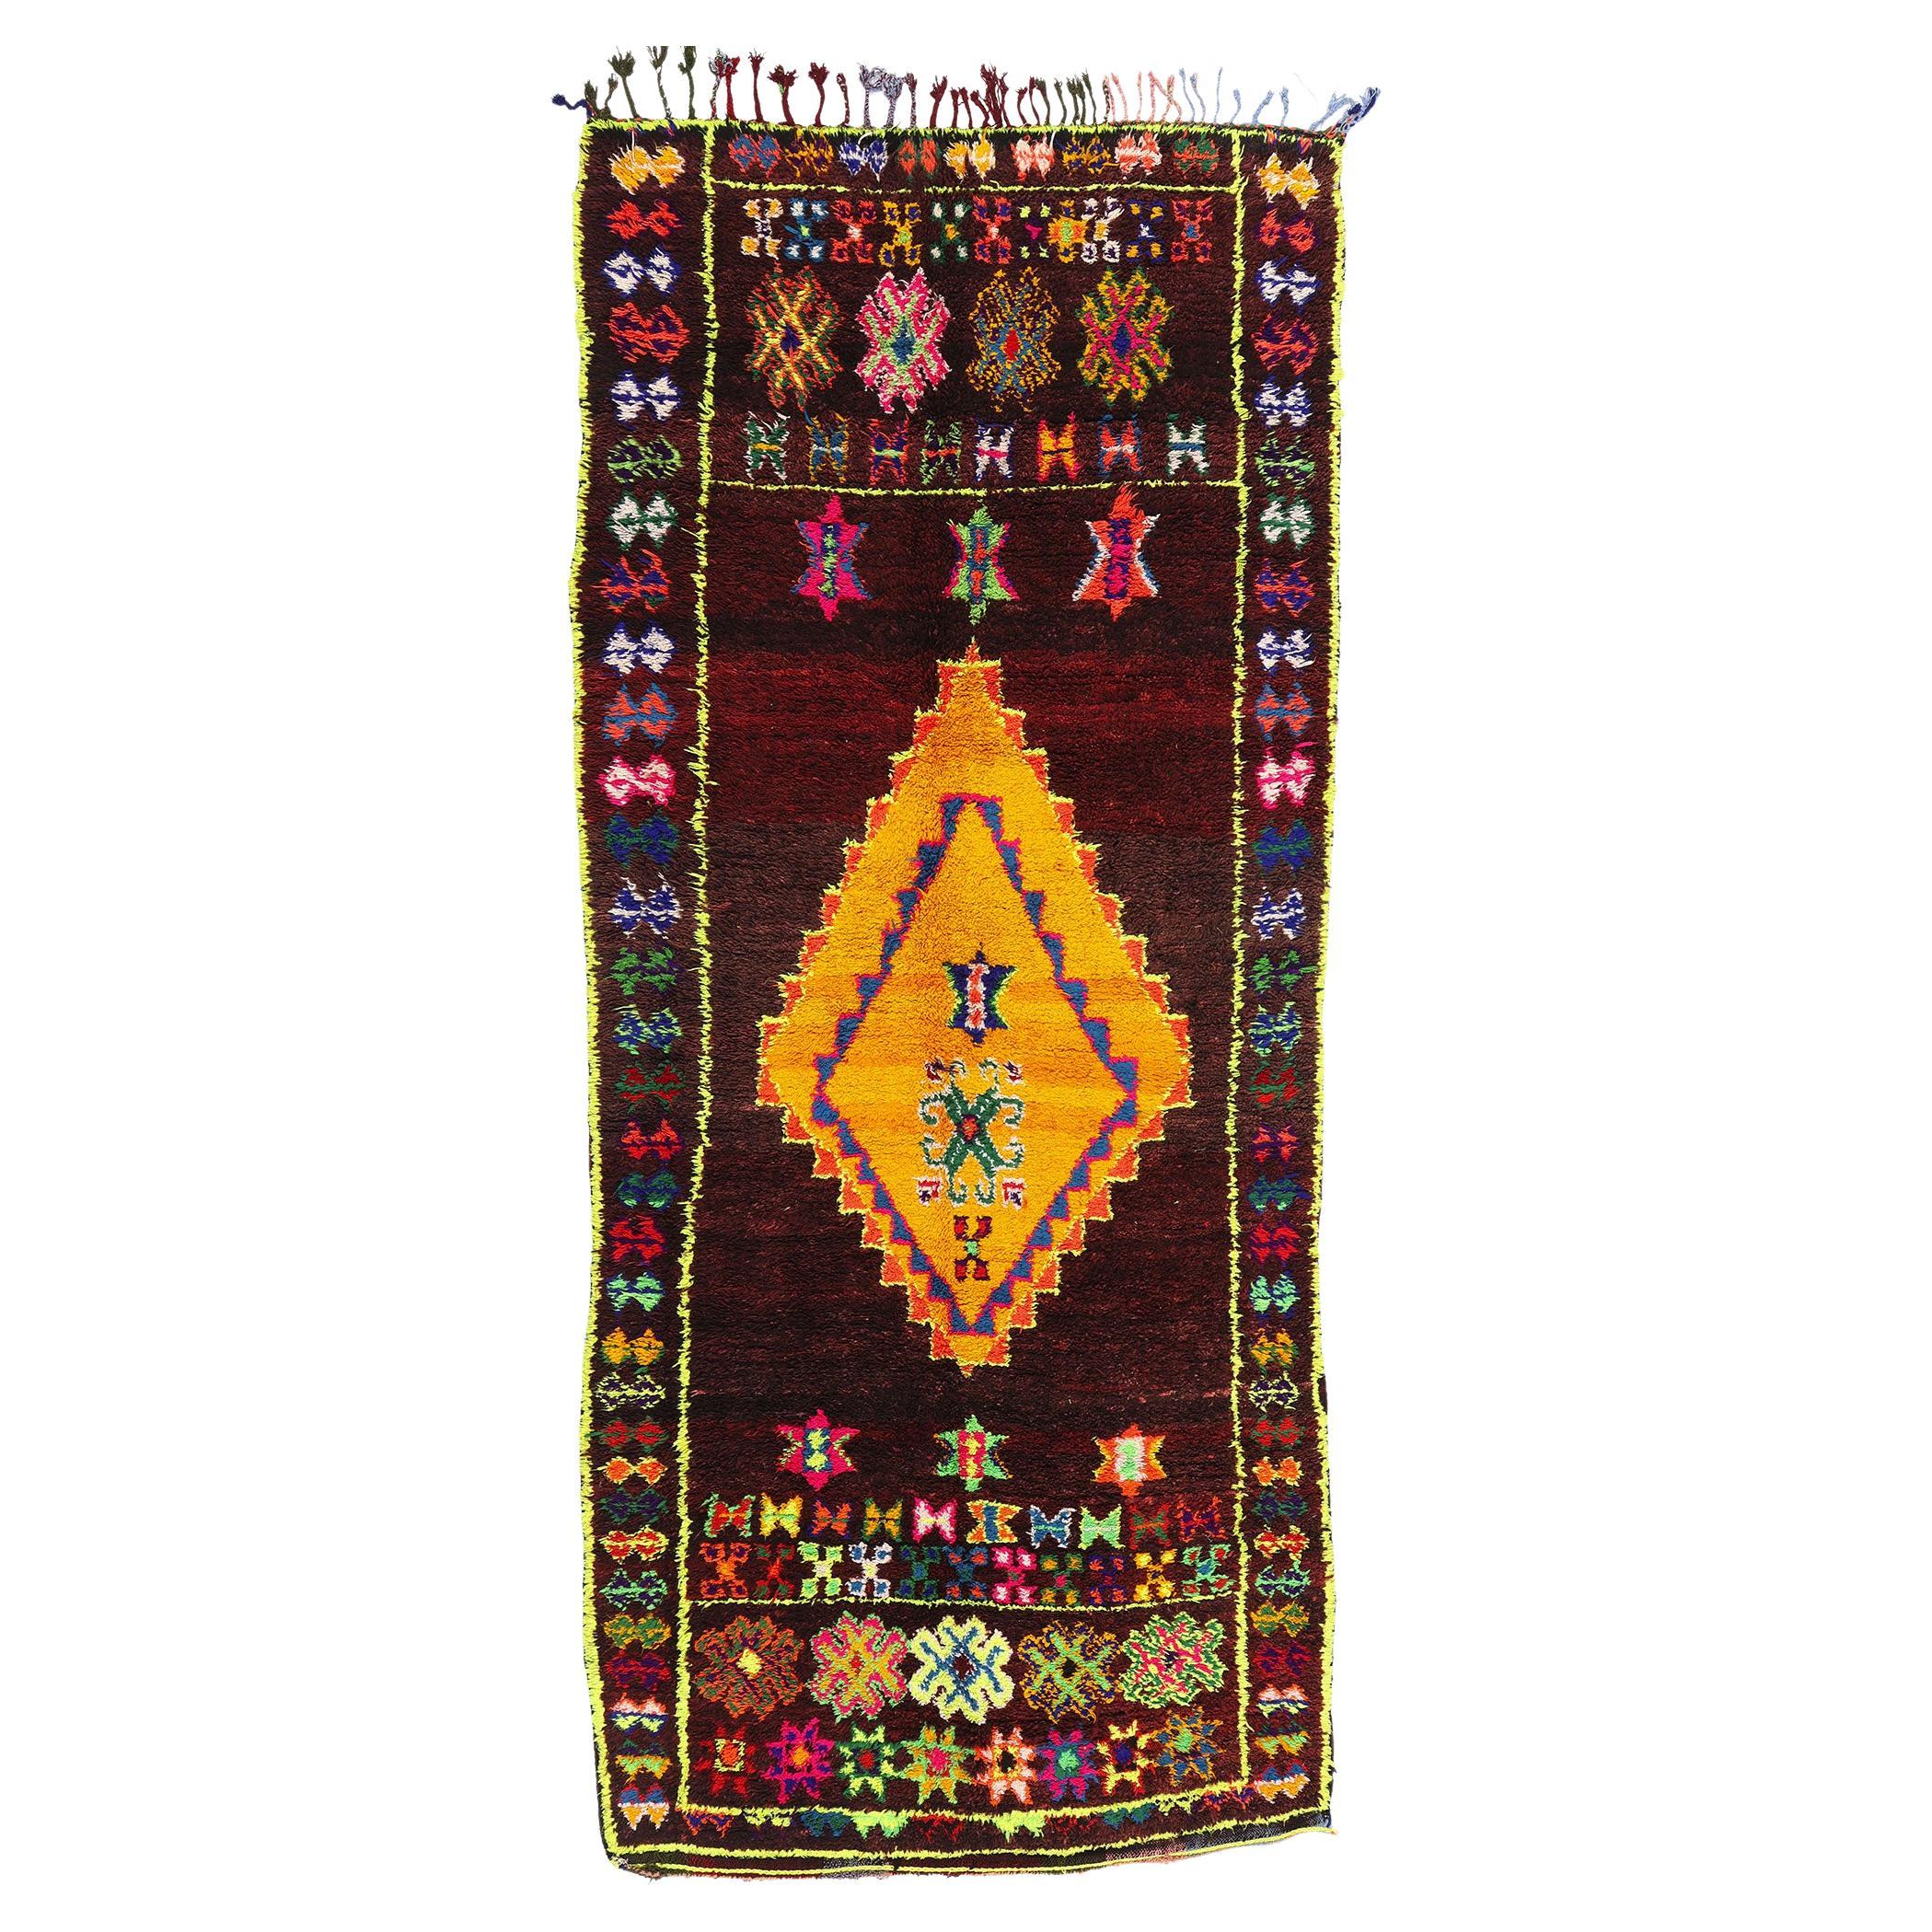 Vintage Beni MGuild Marokkanischer Teppich, kühner Boho-Stil trifft auf Maximalismus